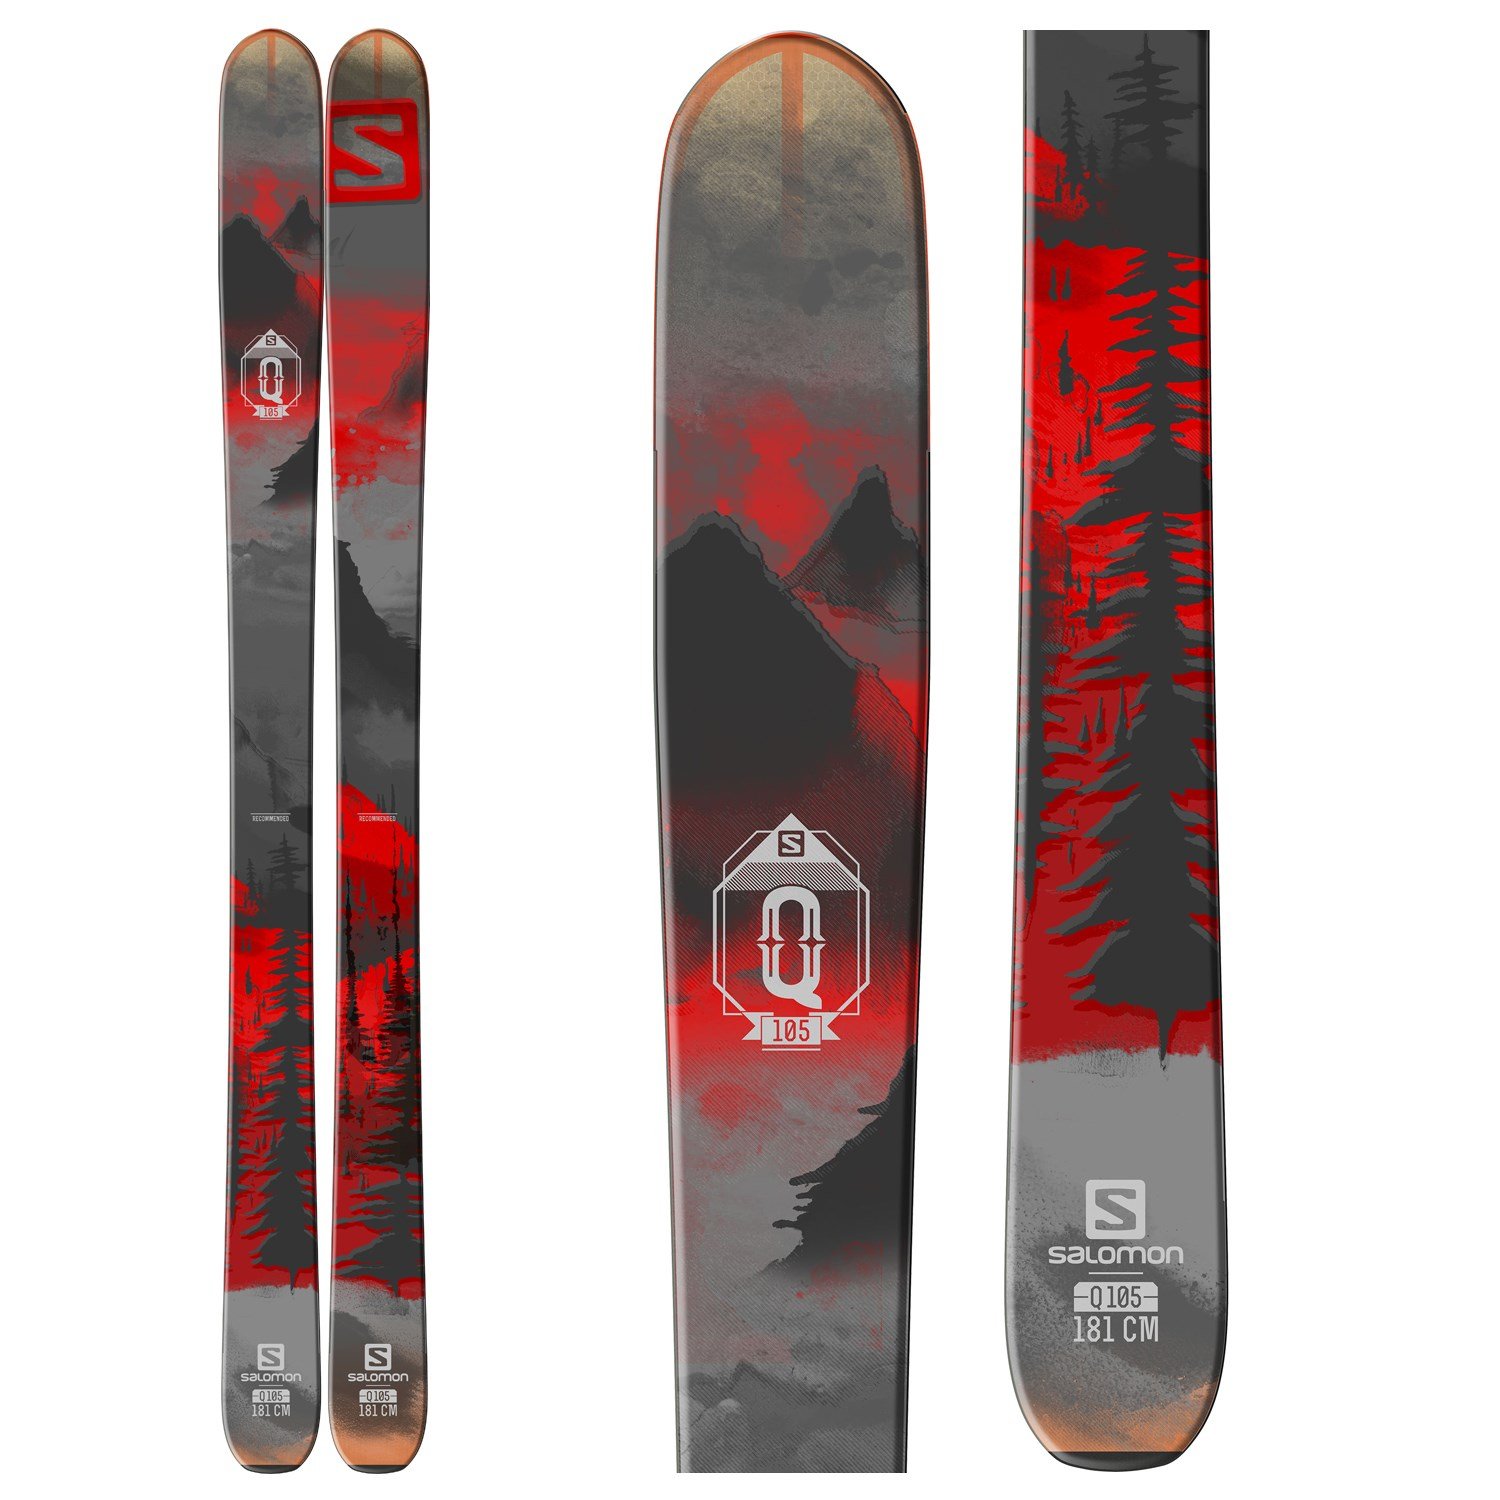 Salomon Q-105 Skis | evo